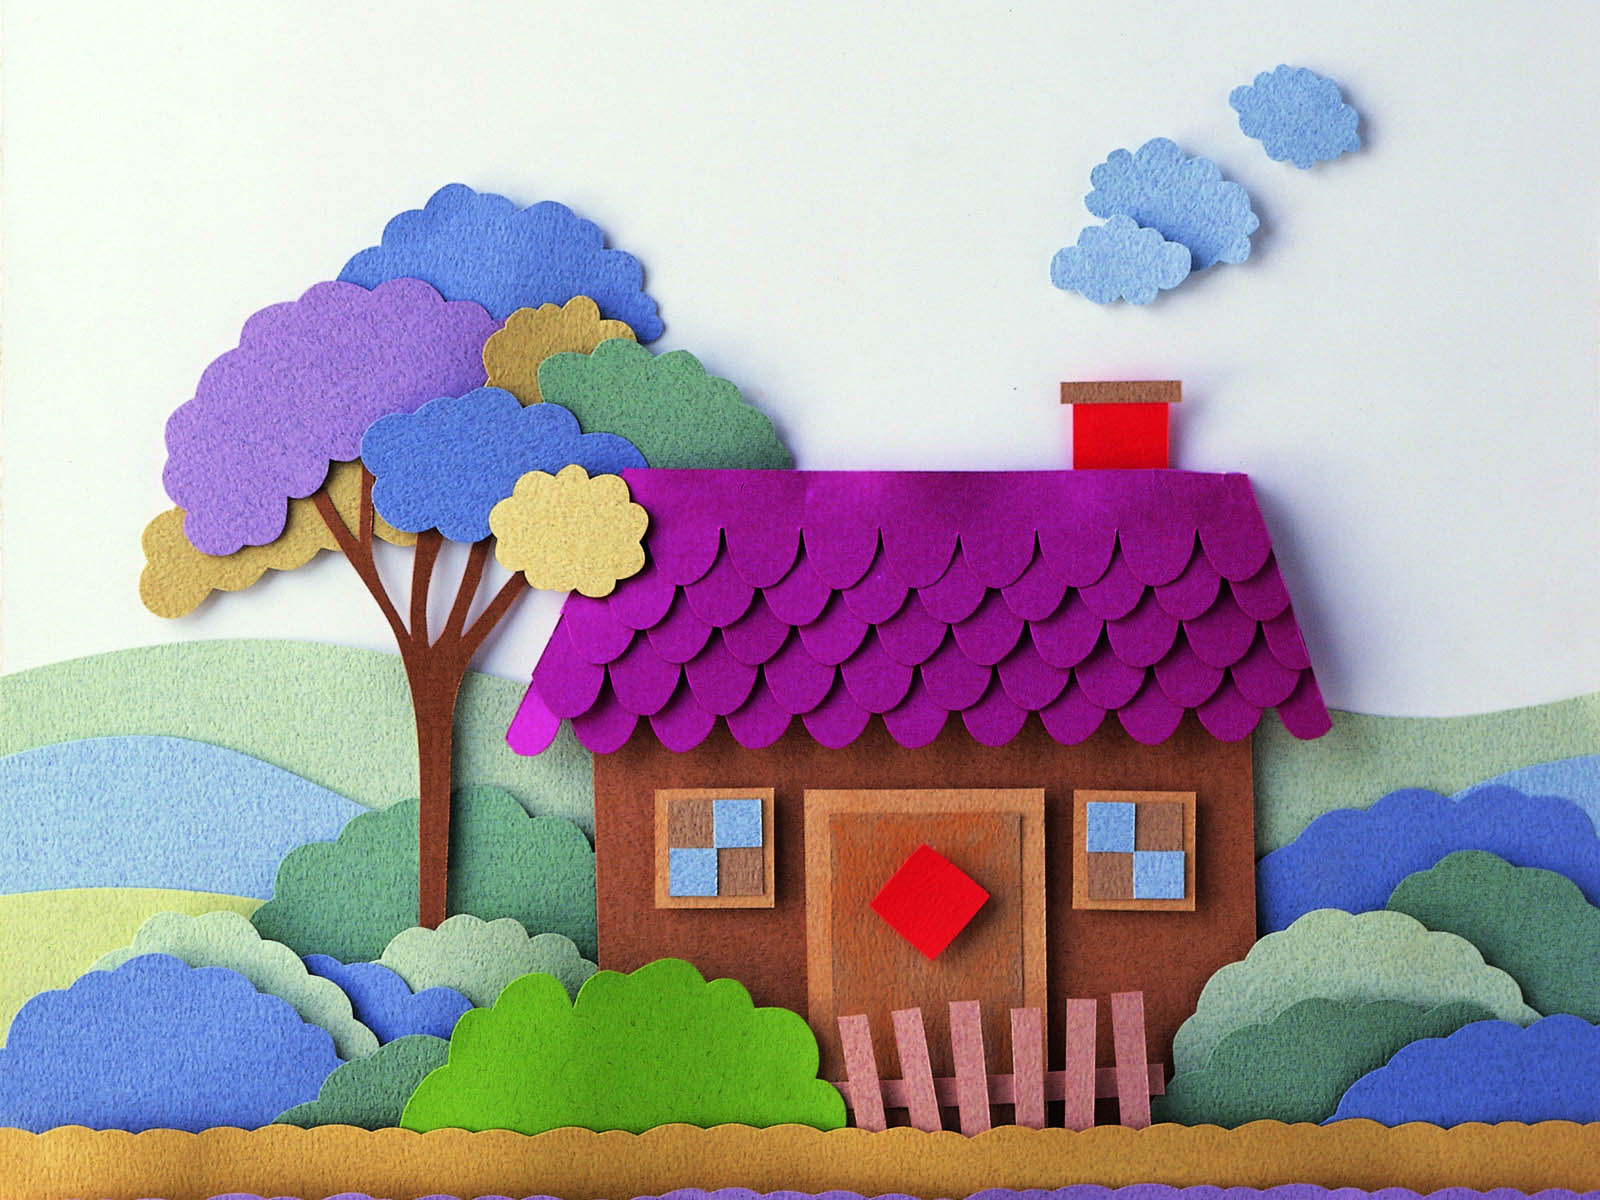 幼儿园剪贴画:漂亮的小房子2幅_几何形状卡片